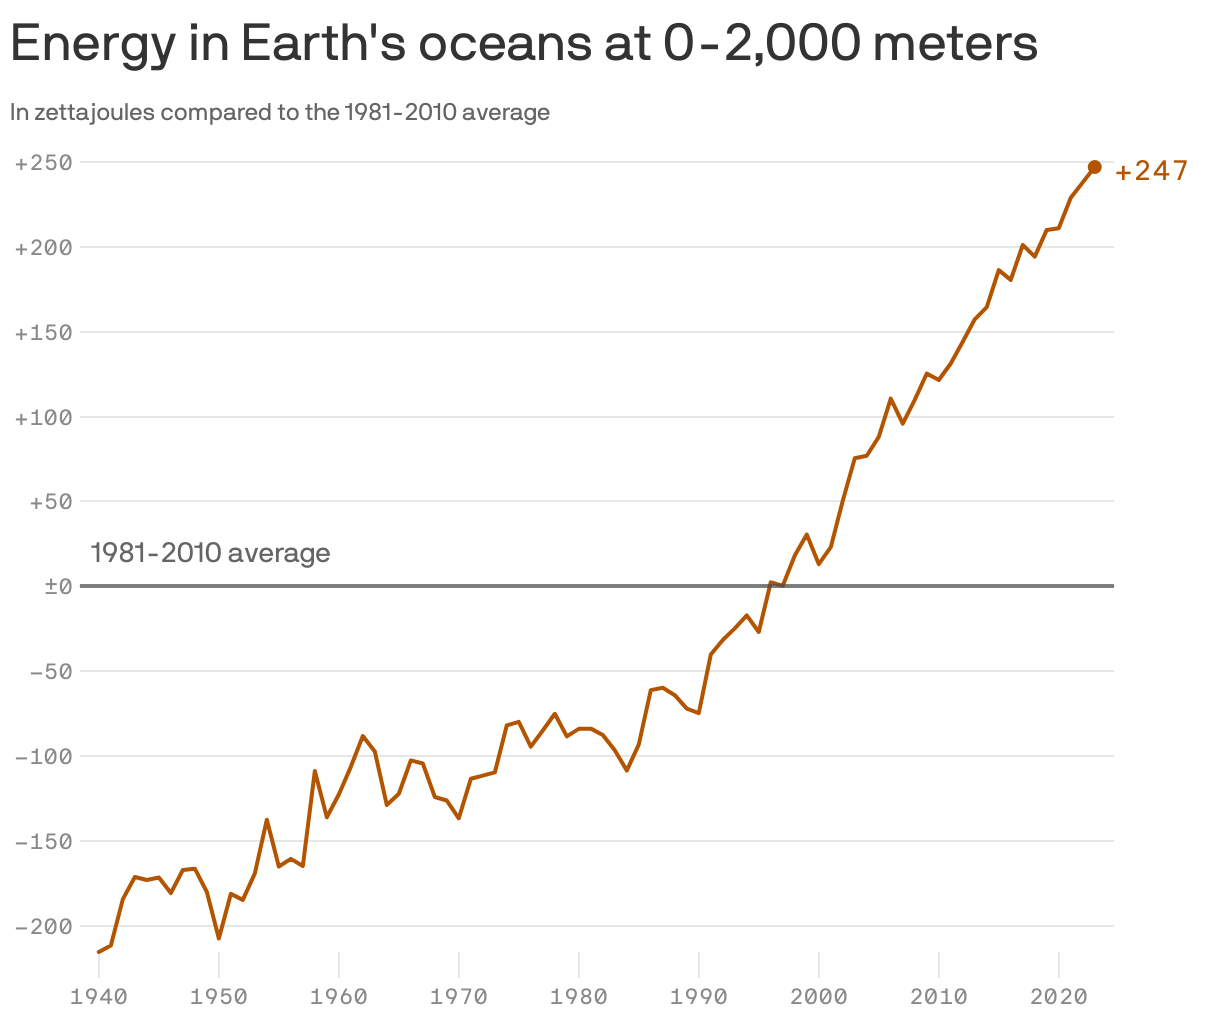 Energy in Earth's oceans at 0-2,000 meters